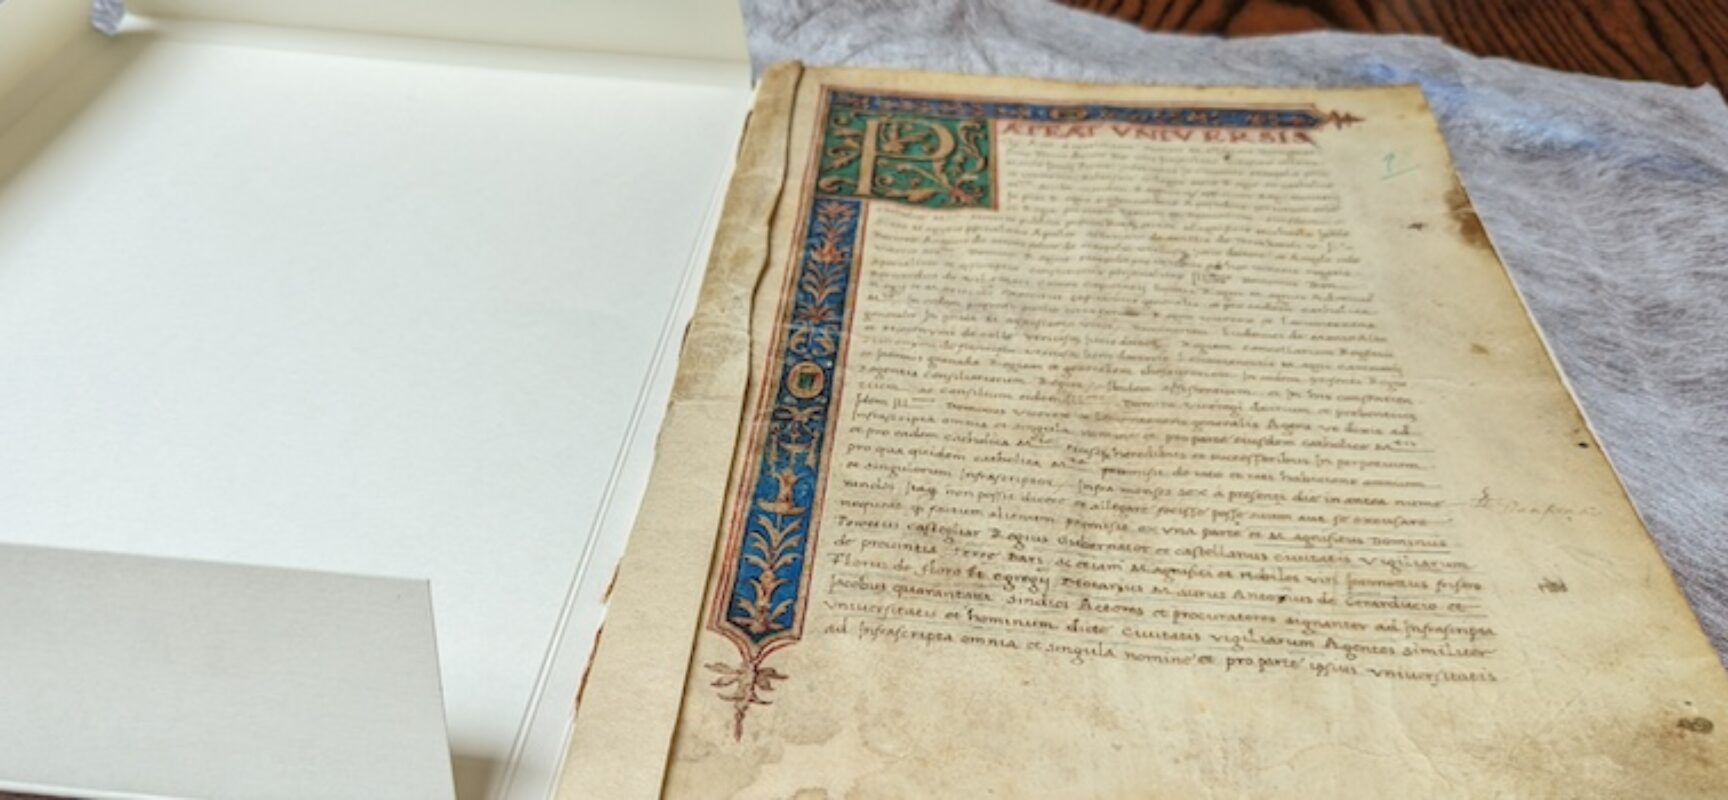 Torna a Bisceglie il “Pateat Universis”,  manoscritto che sanciva la libertà della Città